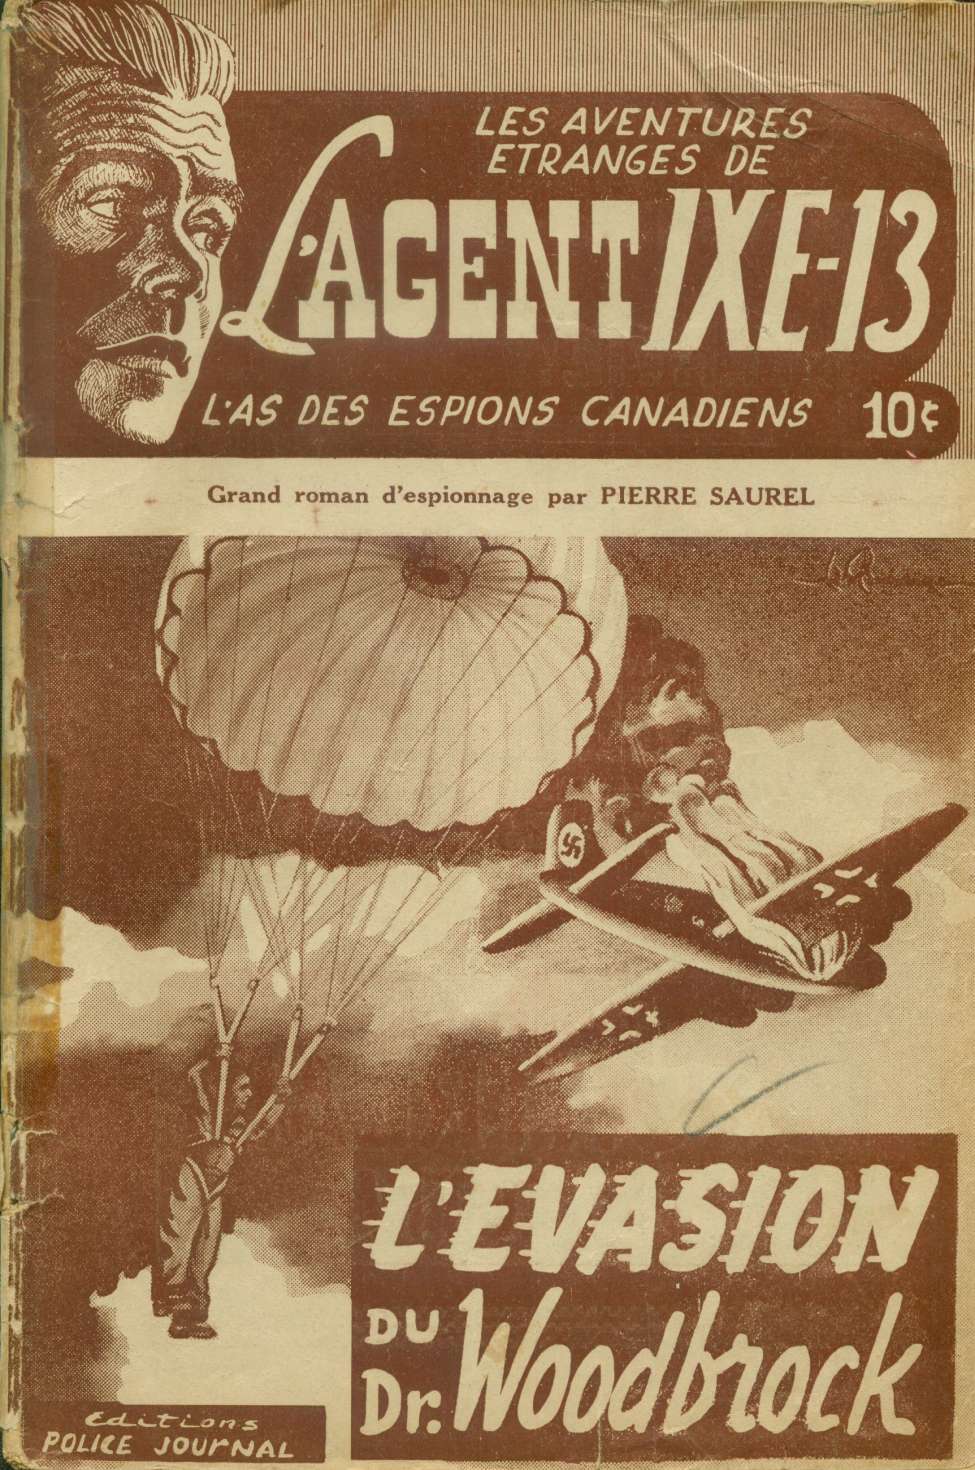 Book Cover For L'Agent IXE-13 v1 4 - L'évasion du Dr. Woodbrock